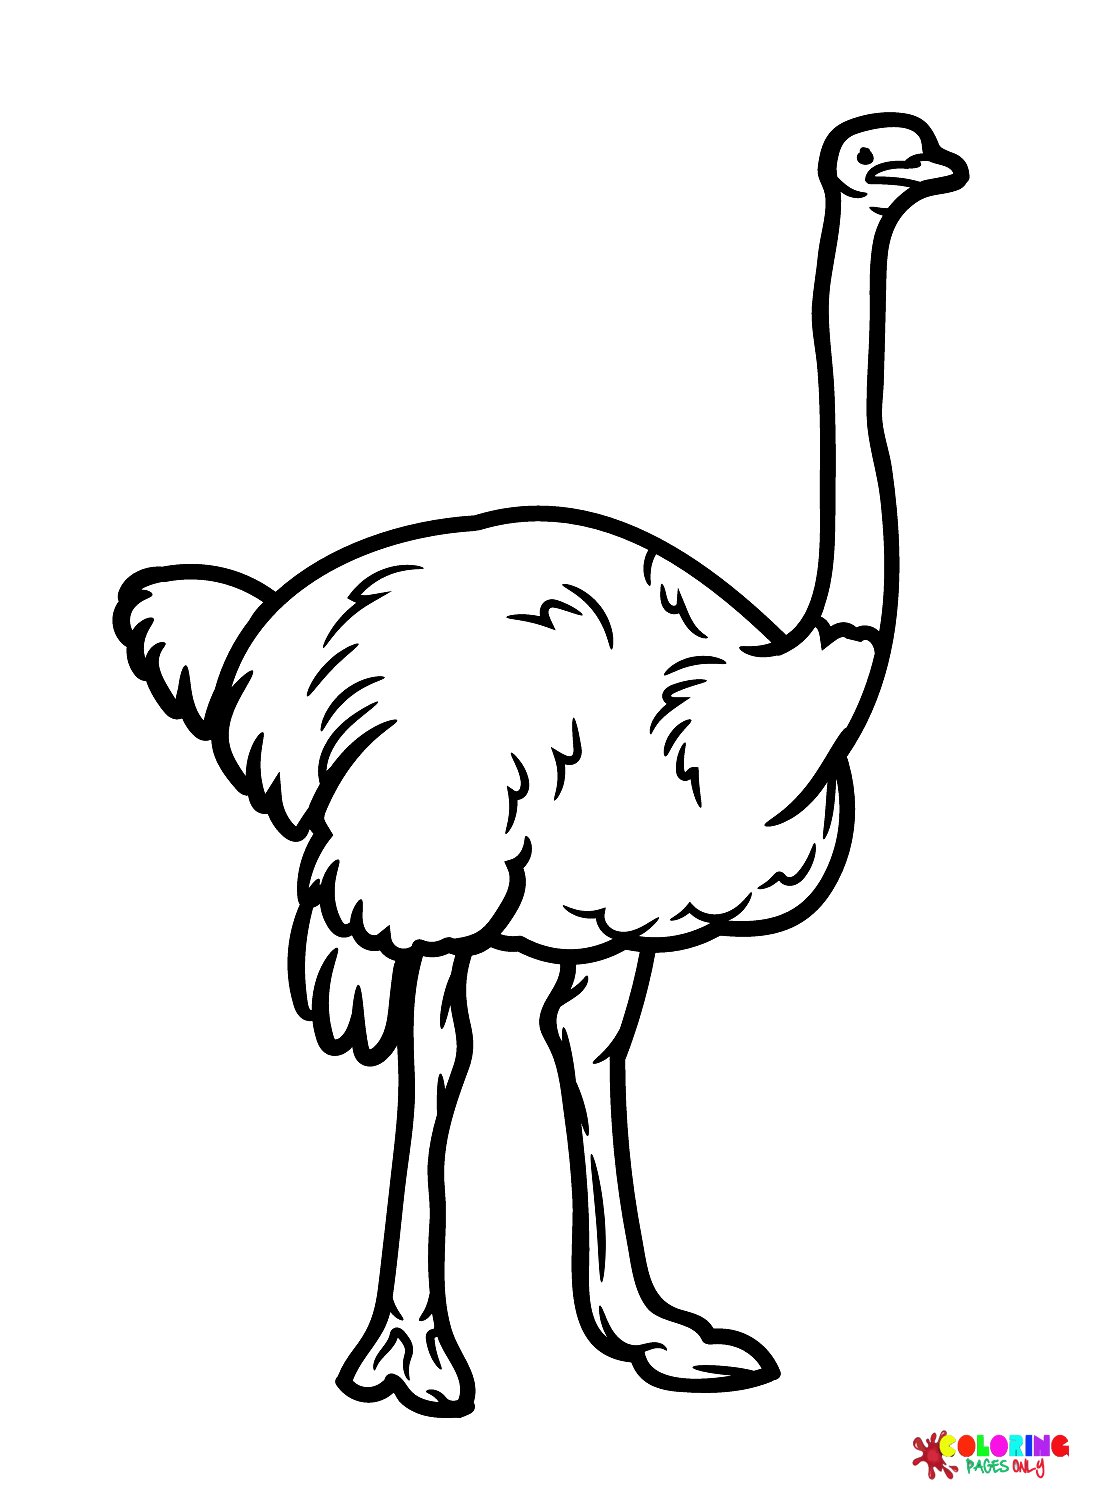 Изображения страусовых птиц от страуса